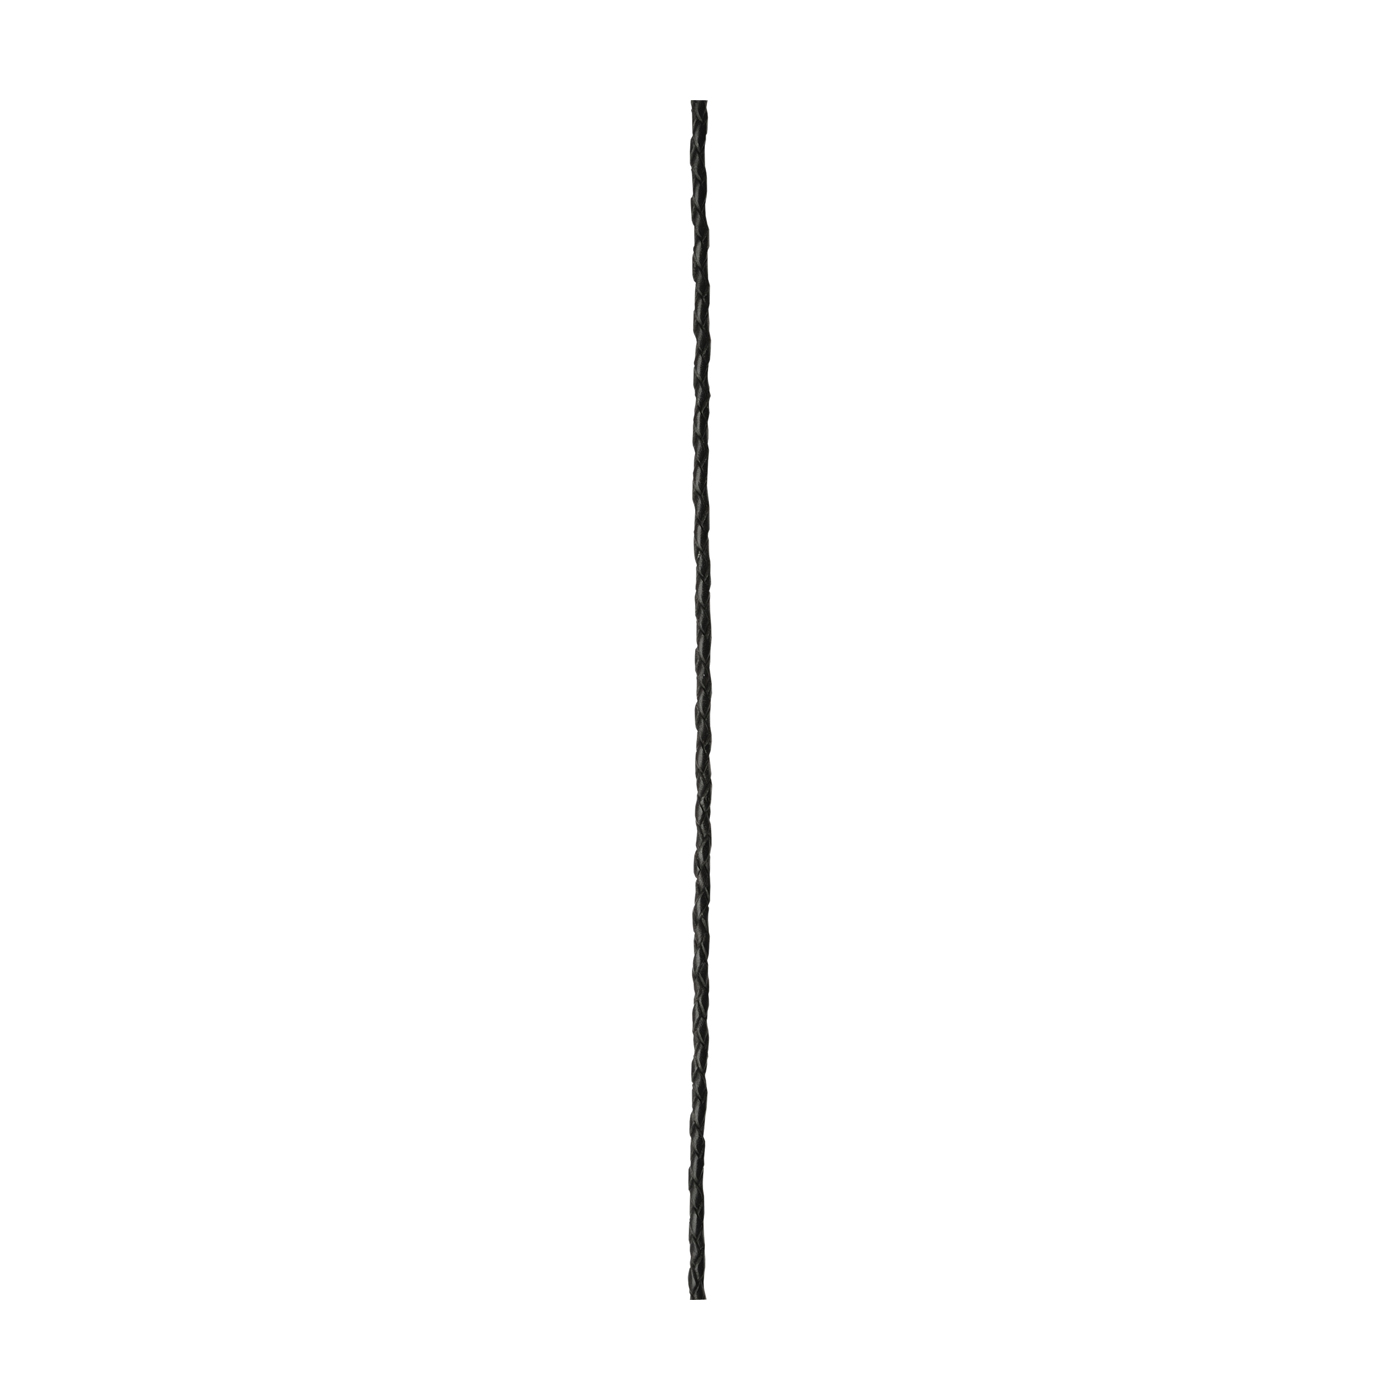 Flechtkordel, schwarz, ø ca. 2,5 mm, Meterware - 1 m